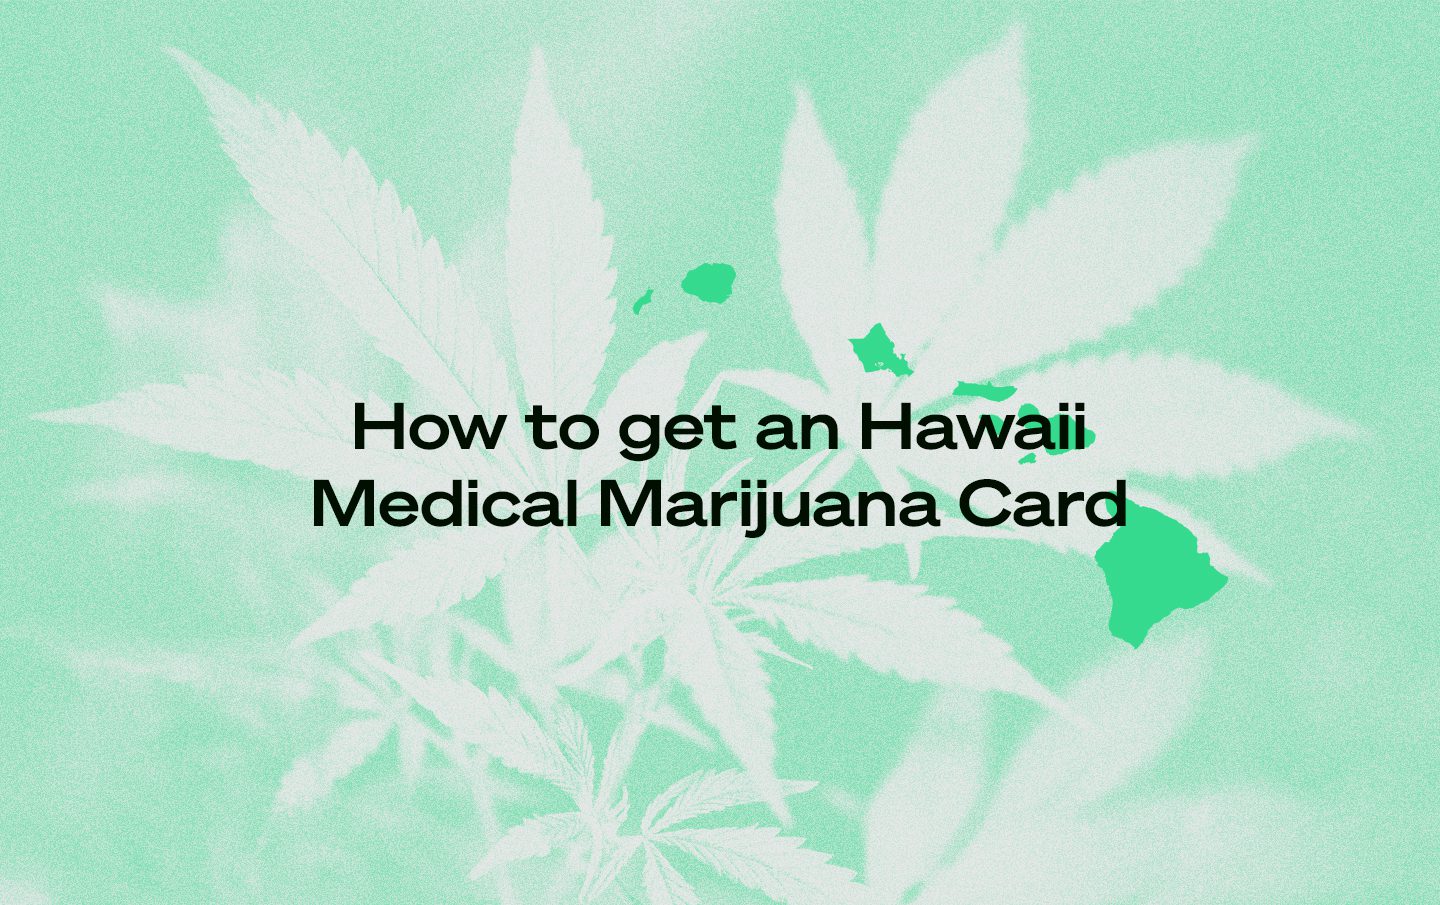 Hawaii medical marijuana card